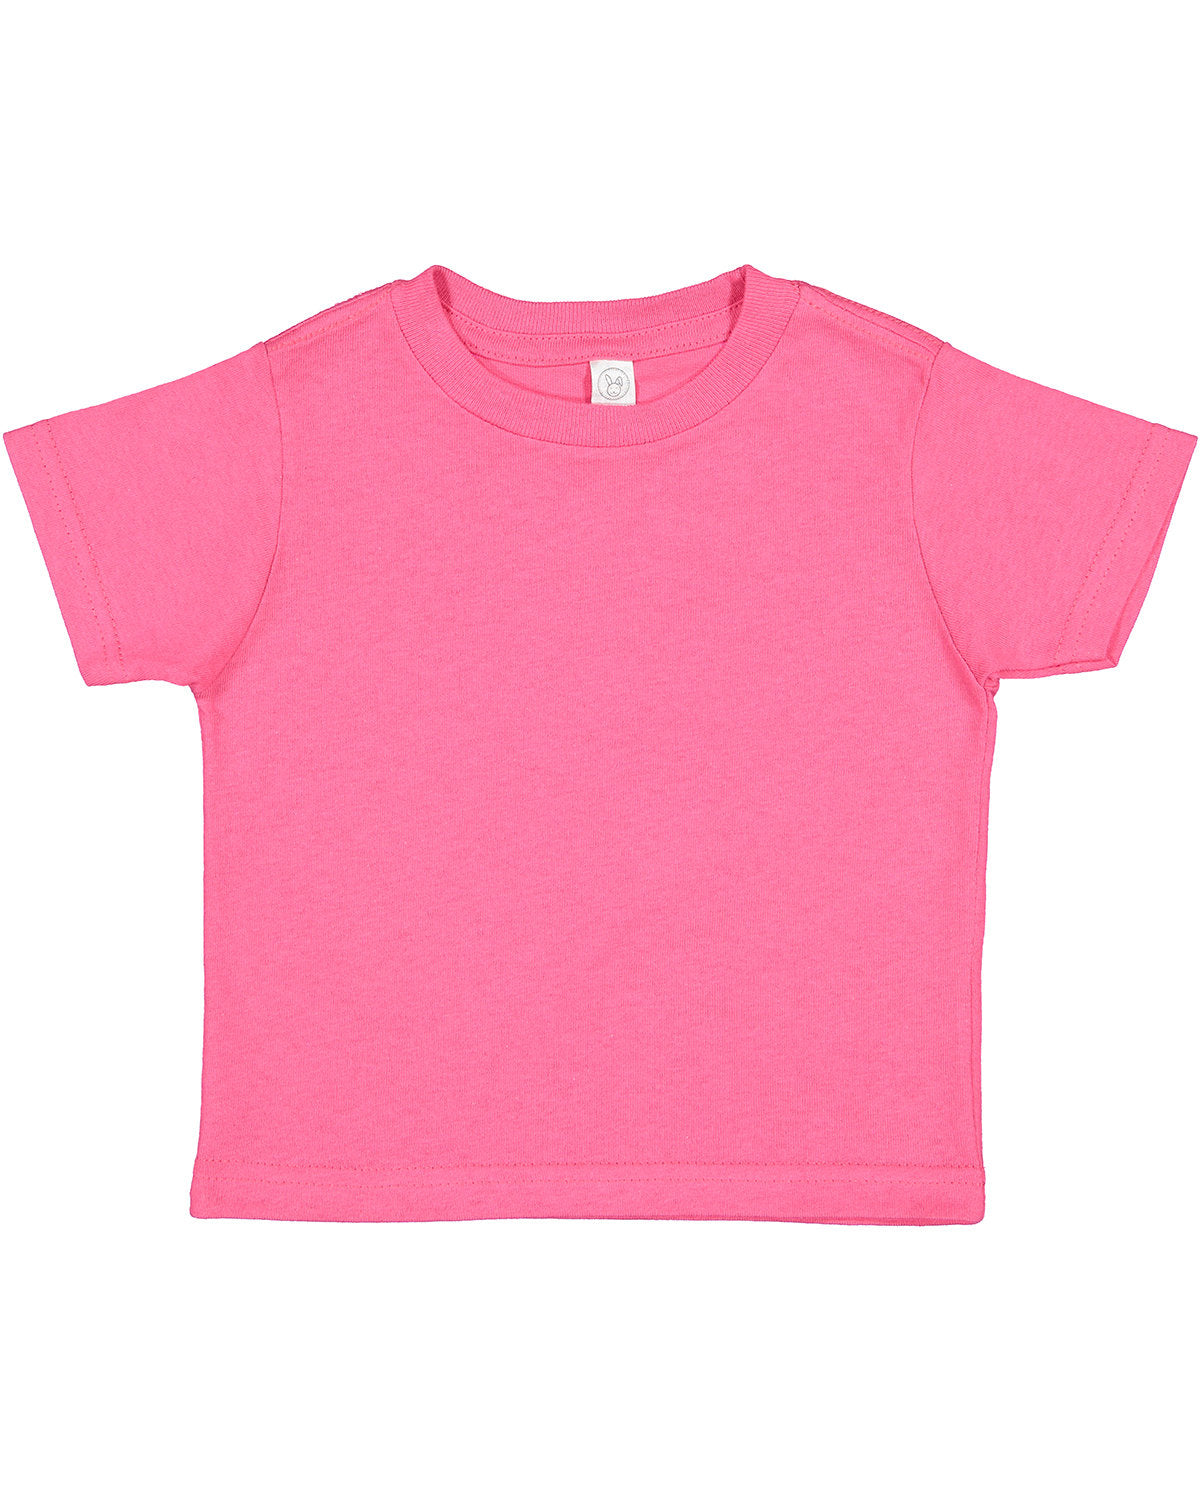 Rabbit Skins Toddler Cotton Jersey T-Shirt 2T / Hot Pink